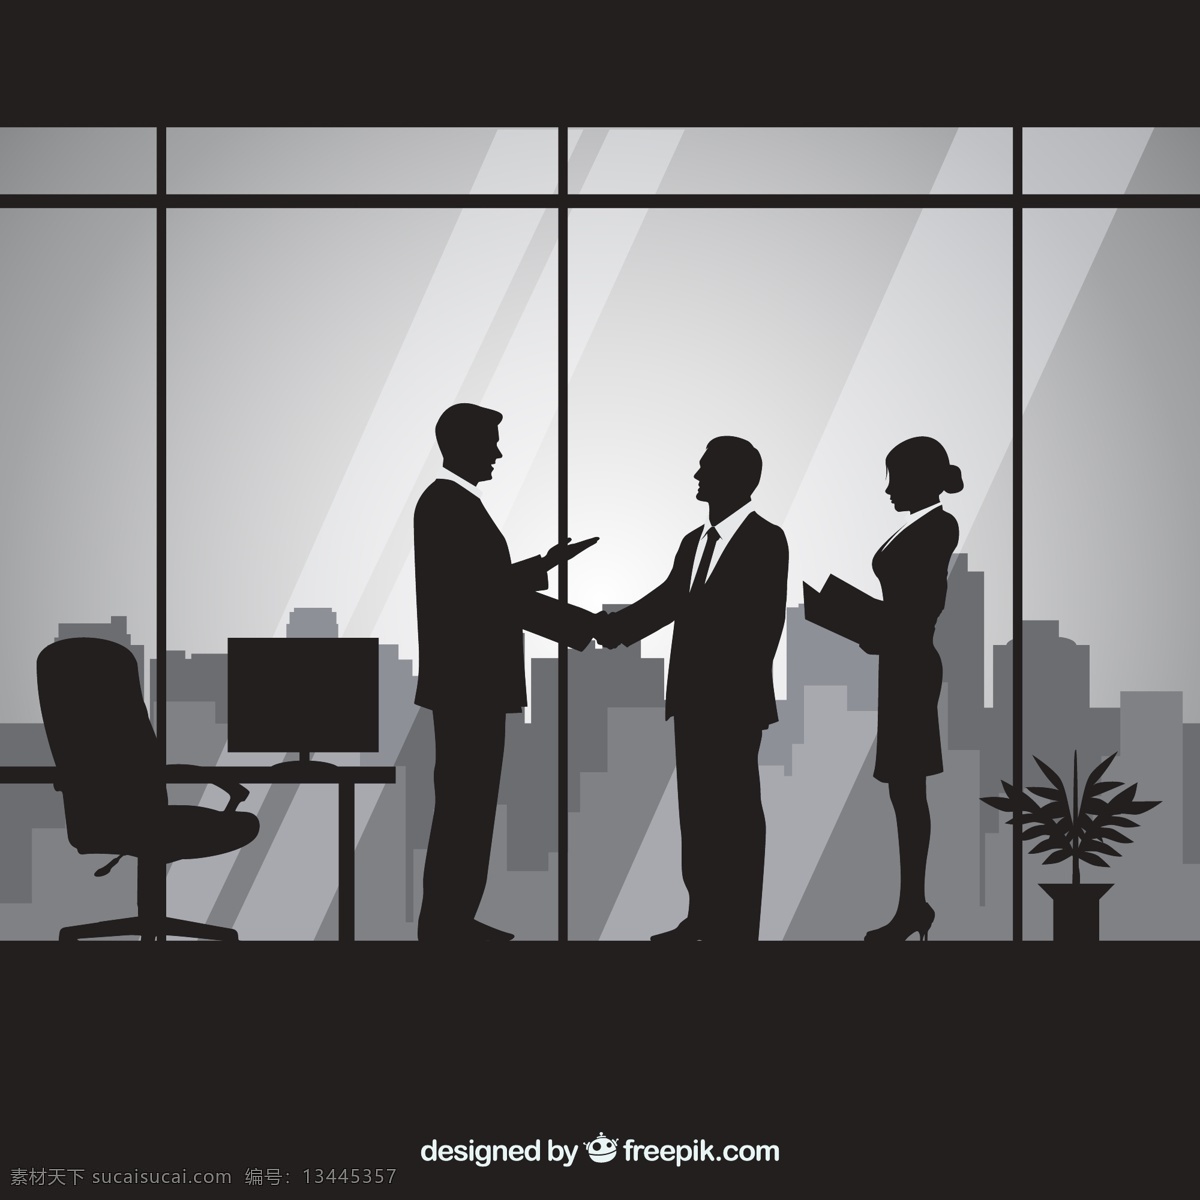 商务合作 人物 剪影 人物剪影 办公桌 盆栽 秘书 商务 男子 合作 握手 办公室